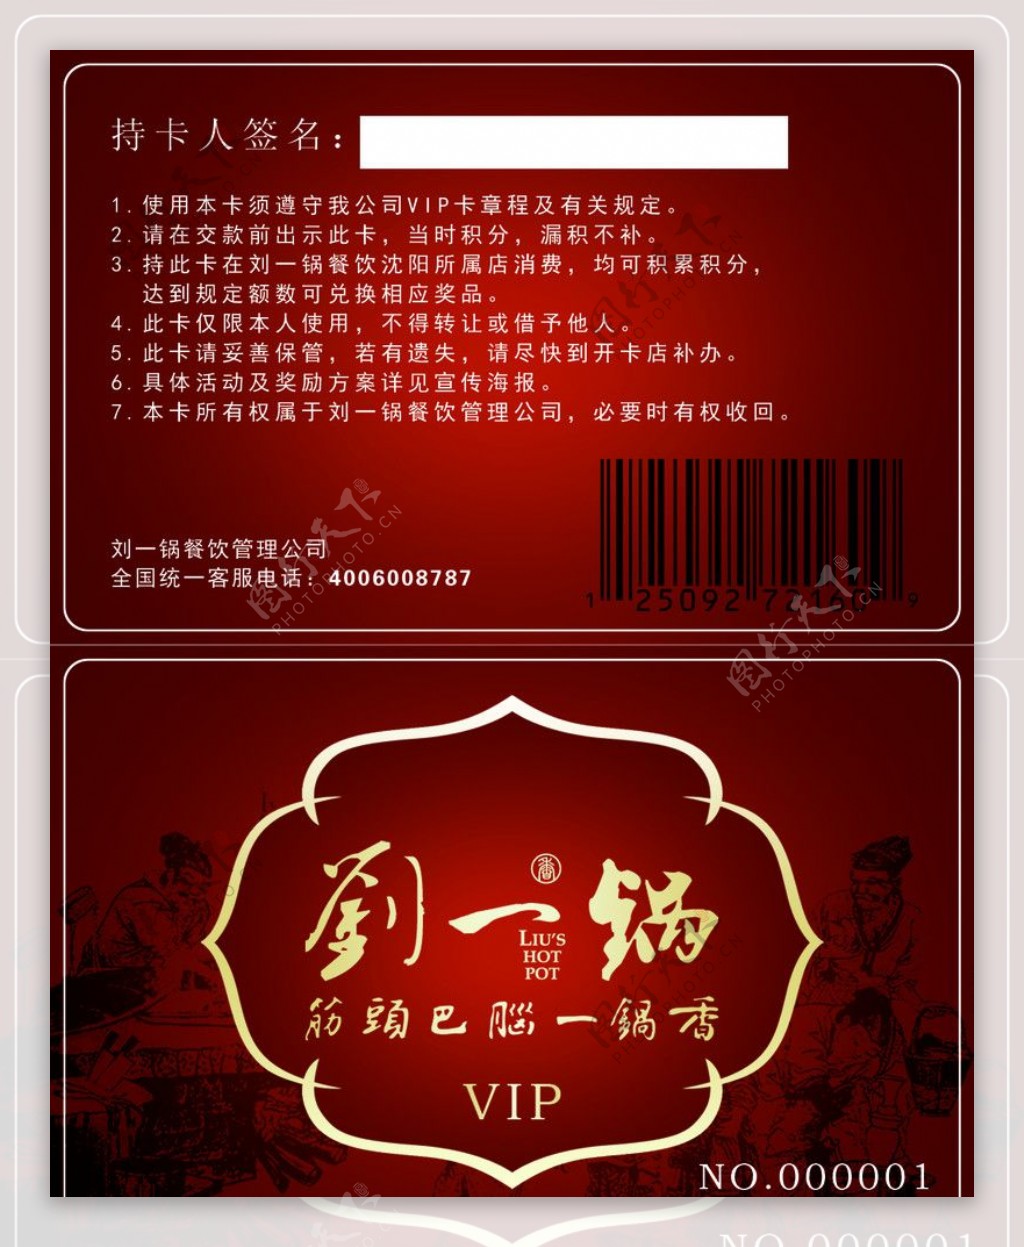 刘一锅VIP卡图片